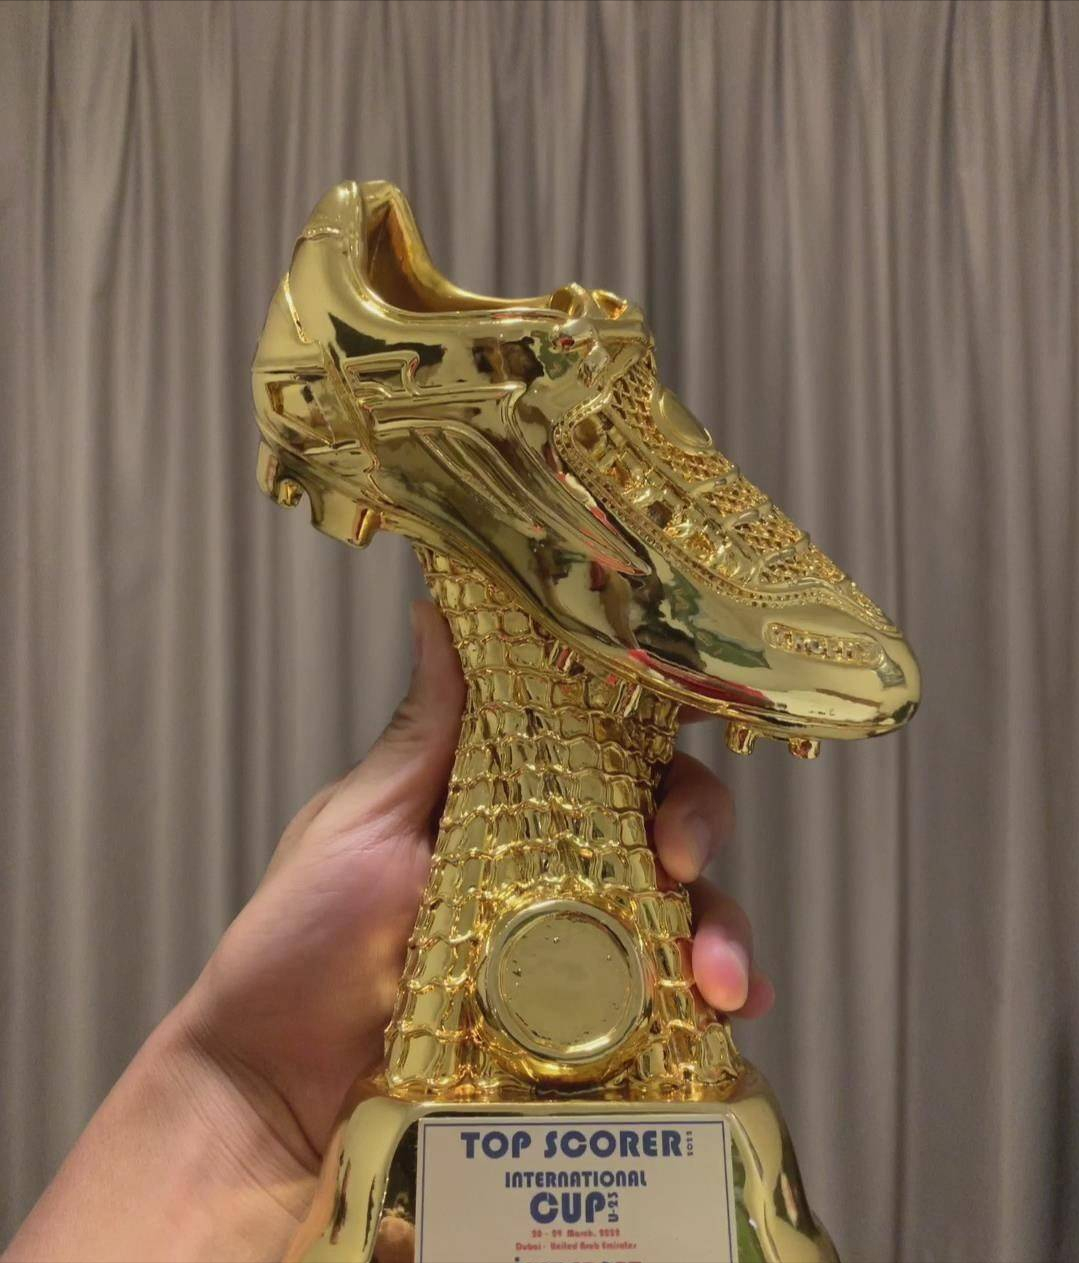 意甲金靴奖得主奥斯梅恩成为欧洲豪门青睐的目标 - 哔哩哔哩